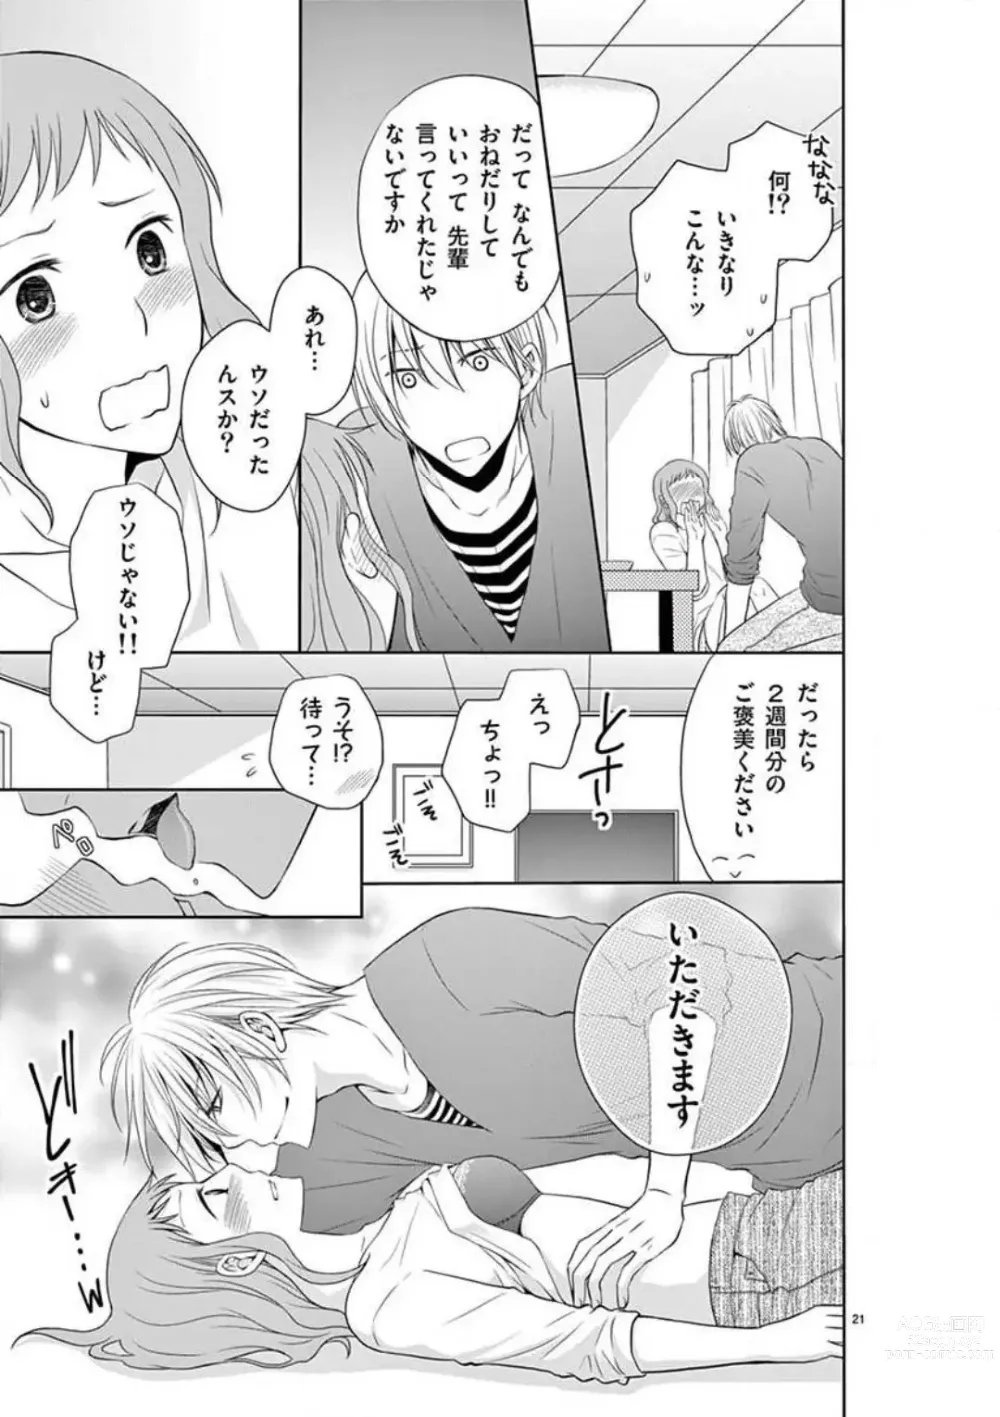 Page 21 of manga Senpai Gentei no Kedamonodesukara 〜 Kanshō-yō Ikemen no Hotobashiru Aijō〜 1-4